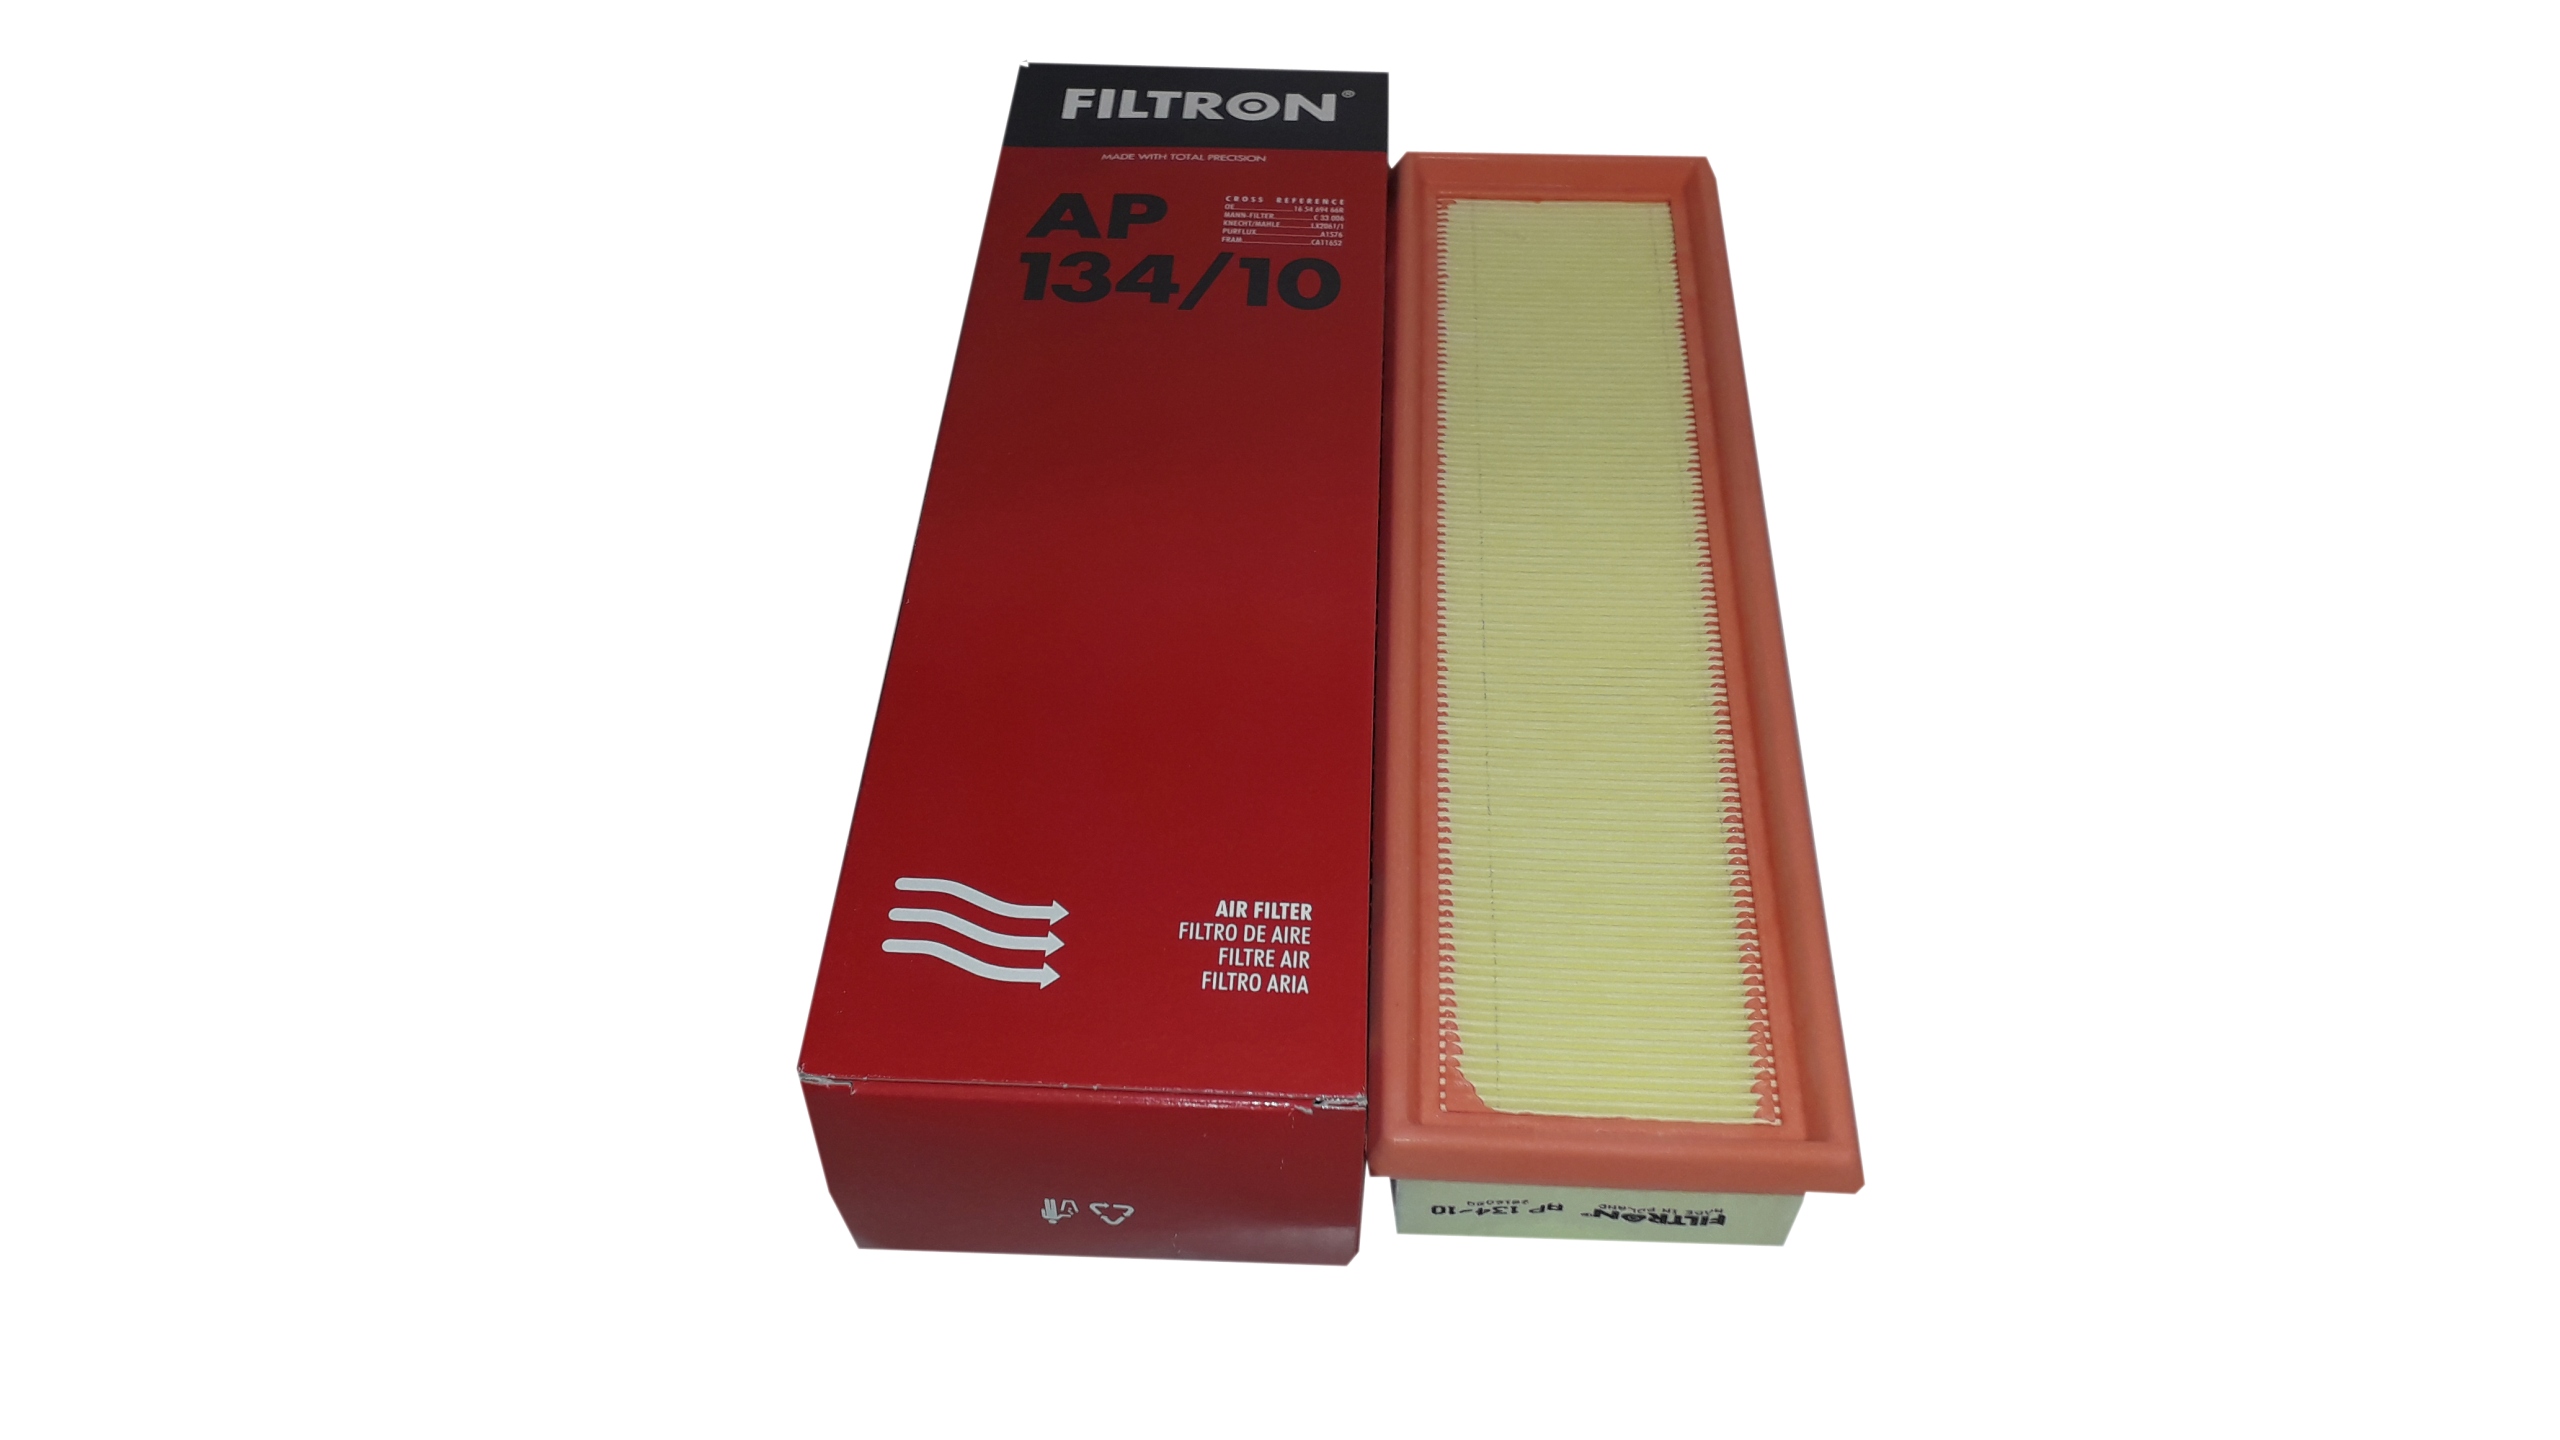 Ap фильтр воздушный. FILTRON AP 134/10. Ap13410 FILTRON. Фильтр воздушный Рено Логан 1,6 Фильтрон. FILTRON ap13410 фильтр воздушный.